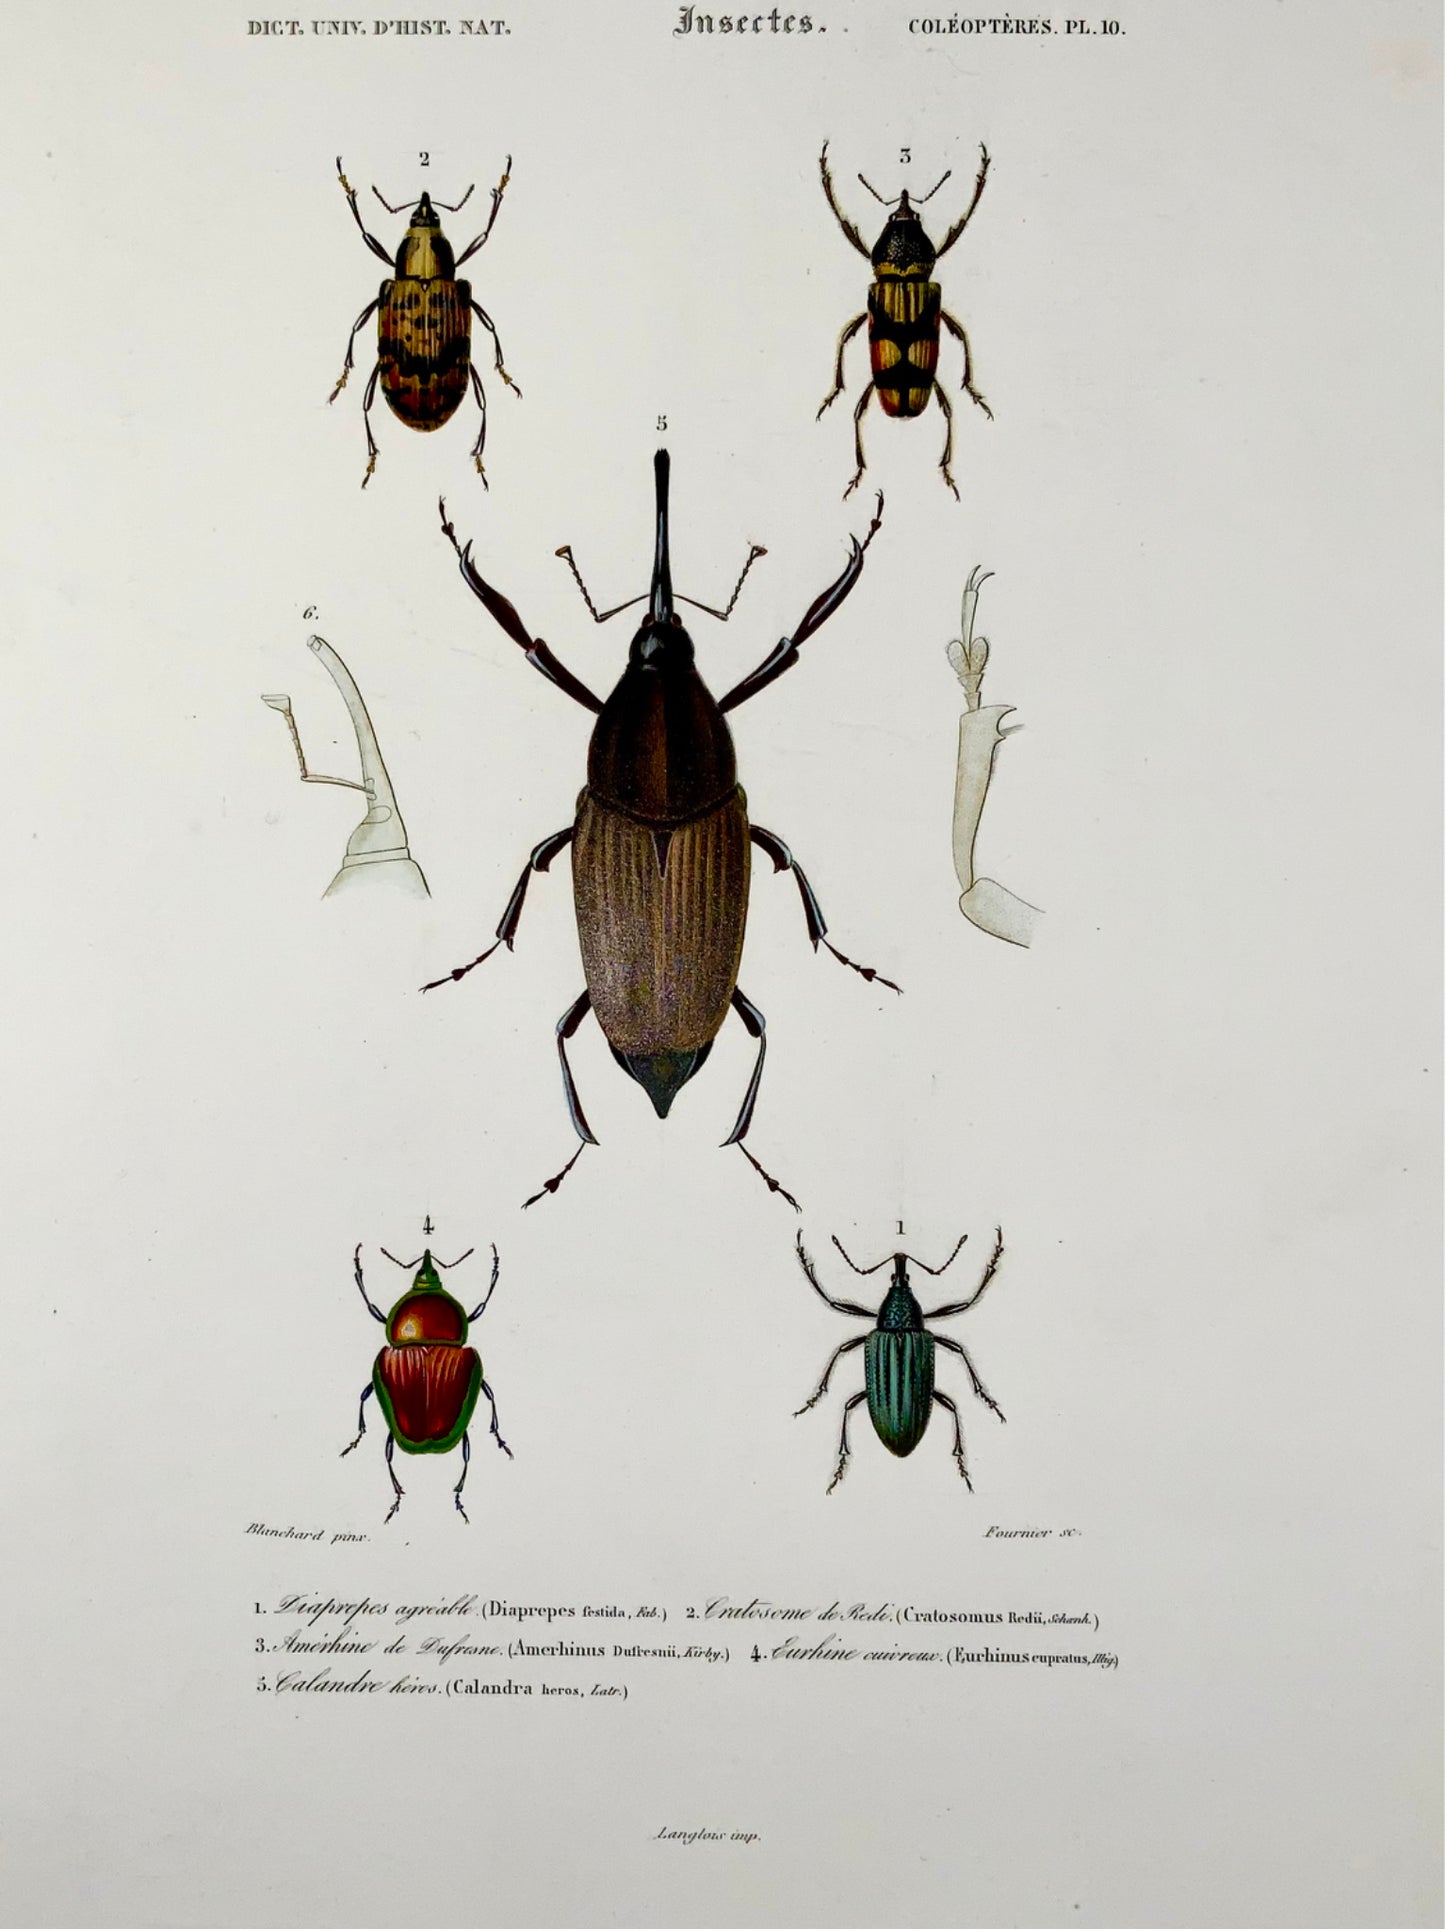 1849 Fournier, Blanchard, Coléoptères, couleur exquise à la main, folio, insectes